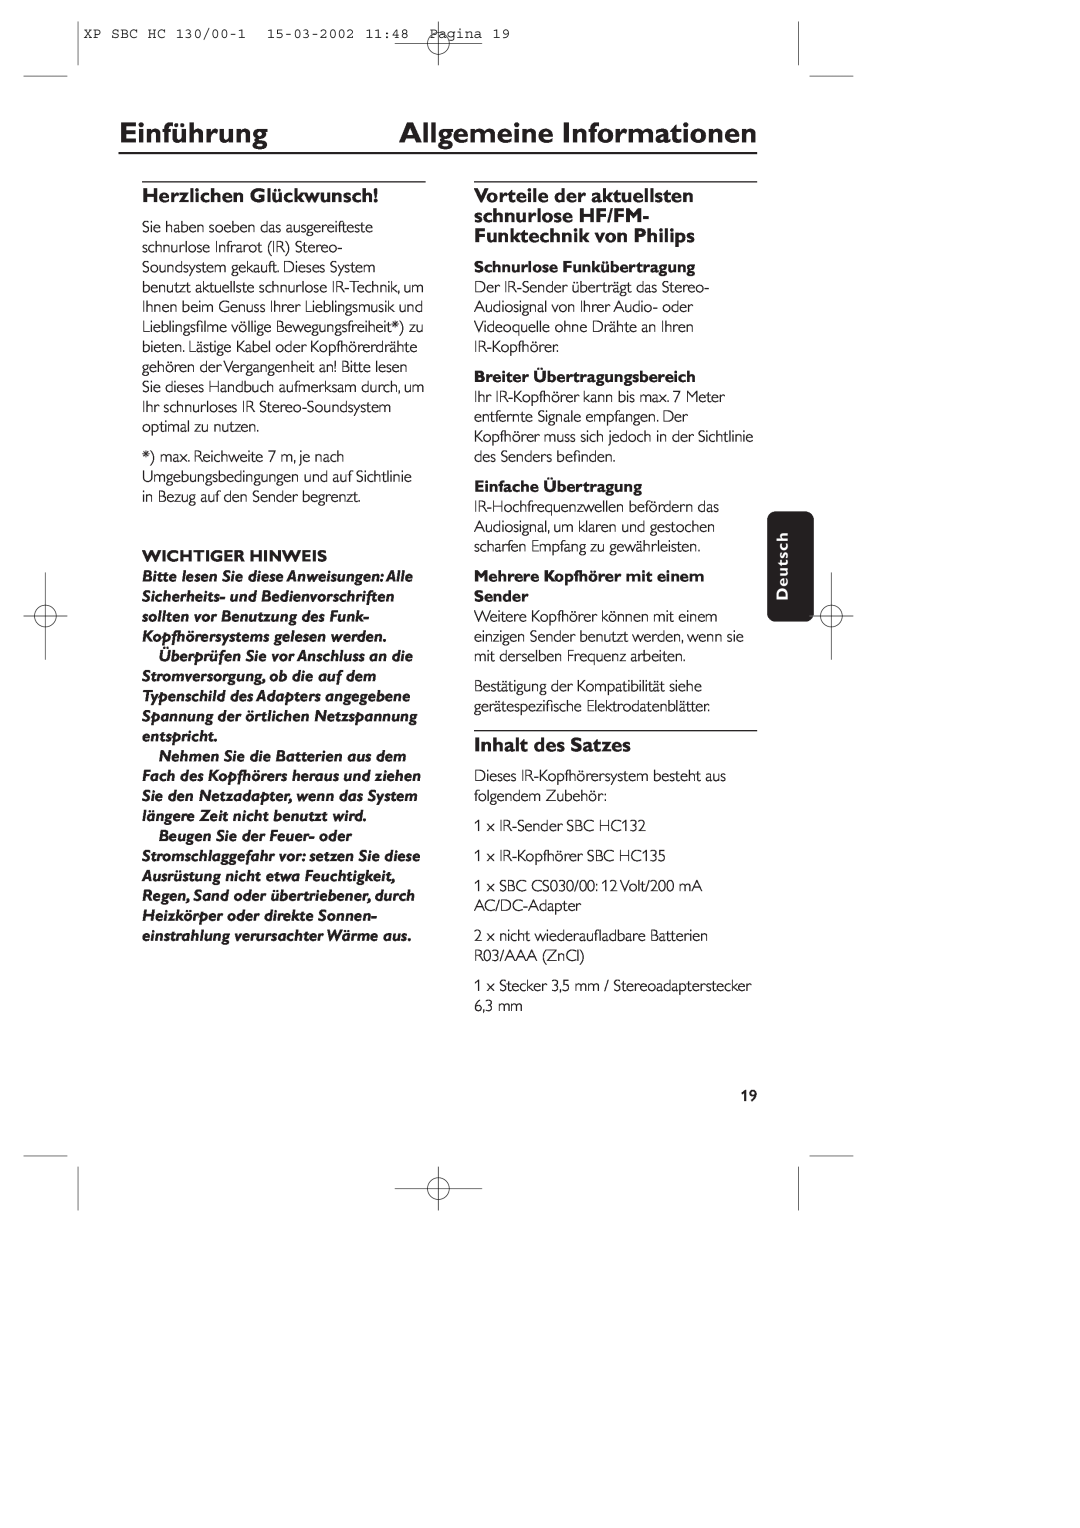 Philips SBC HC130 manual Einführung, Allgemeine Informationen, Herzlichen Glückwunsch, Inhalt des Satzes, Wichtiger Hinweis 